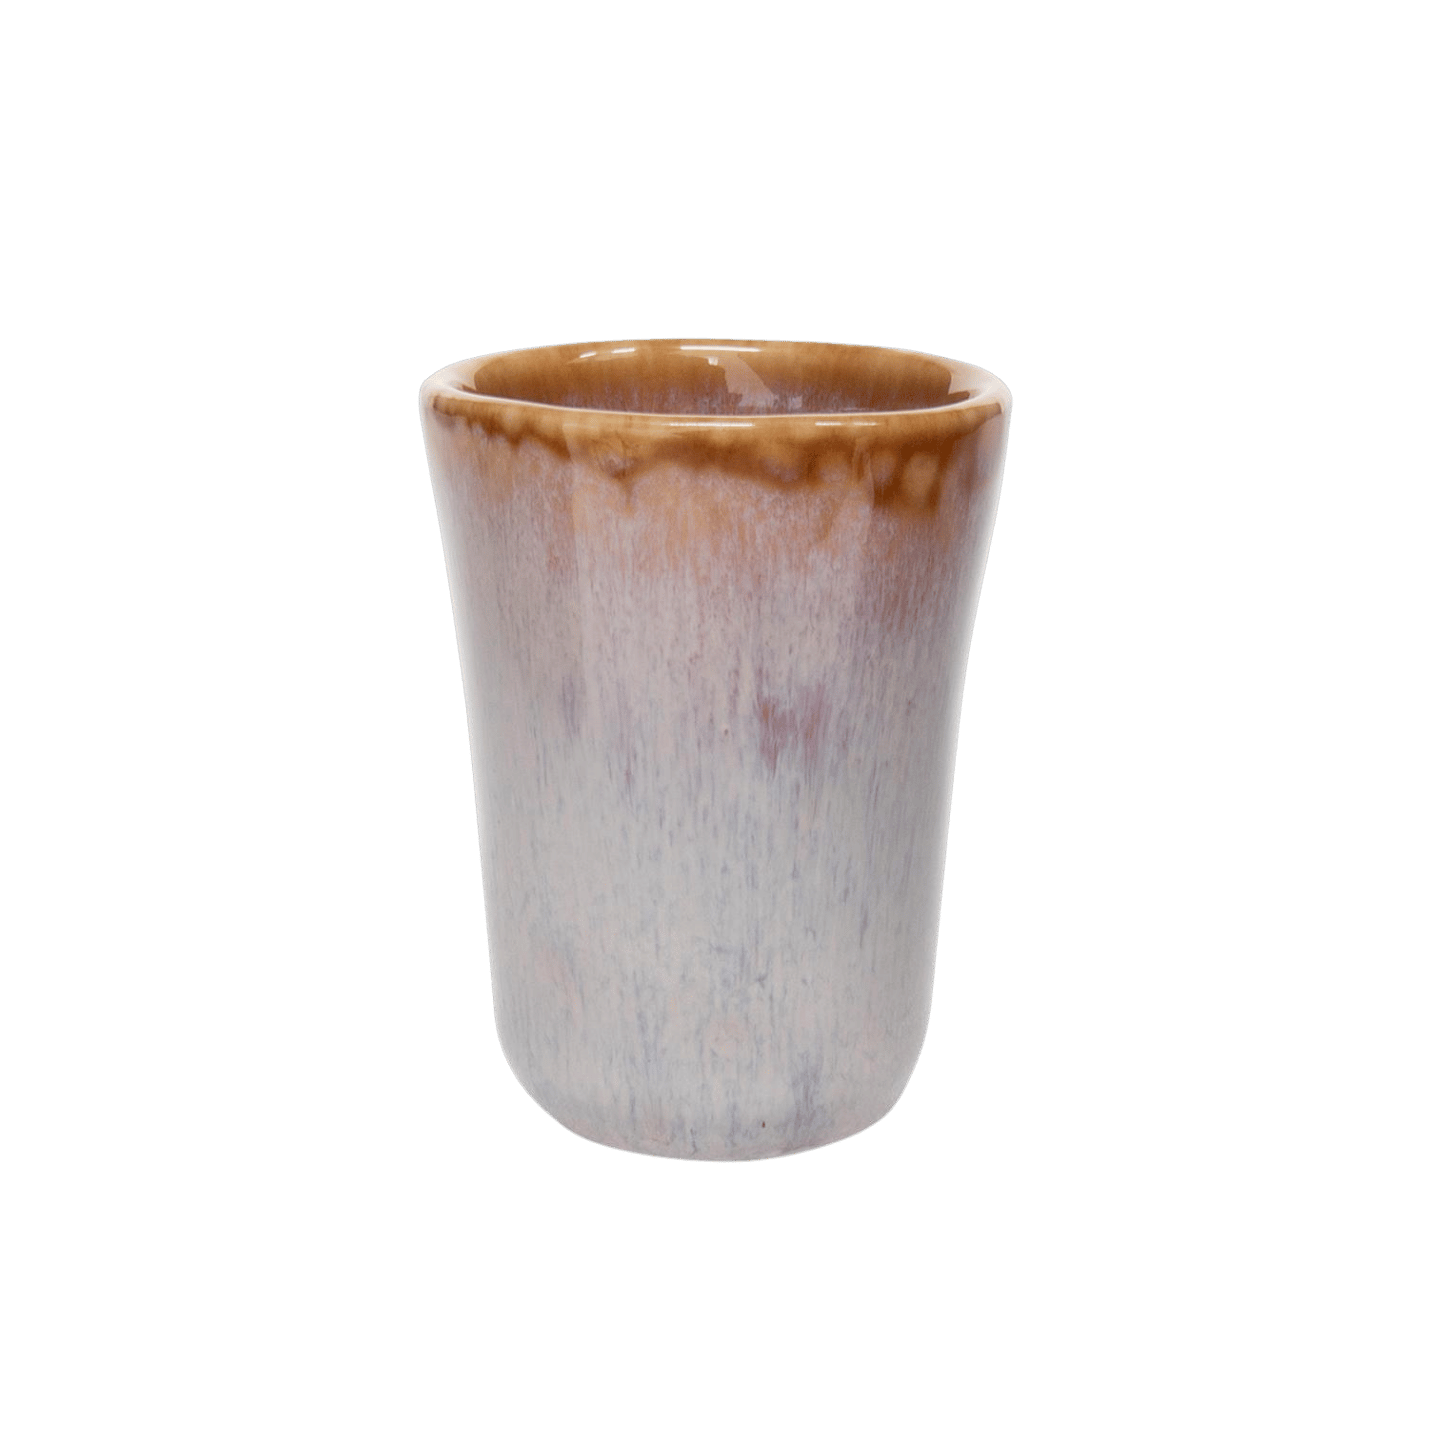 espresso tassen in klein keramik aus portugal